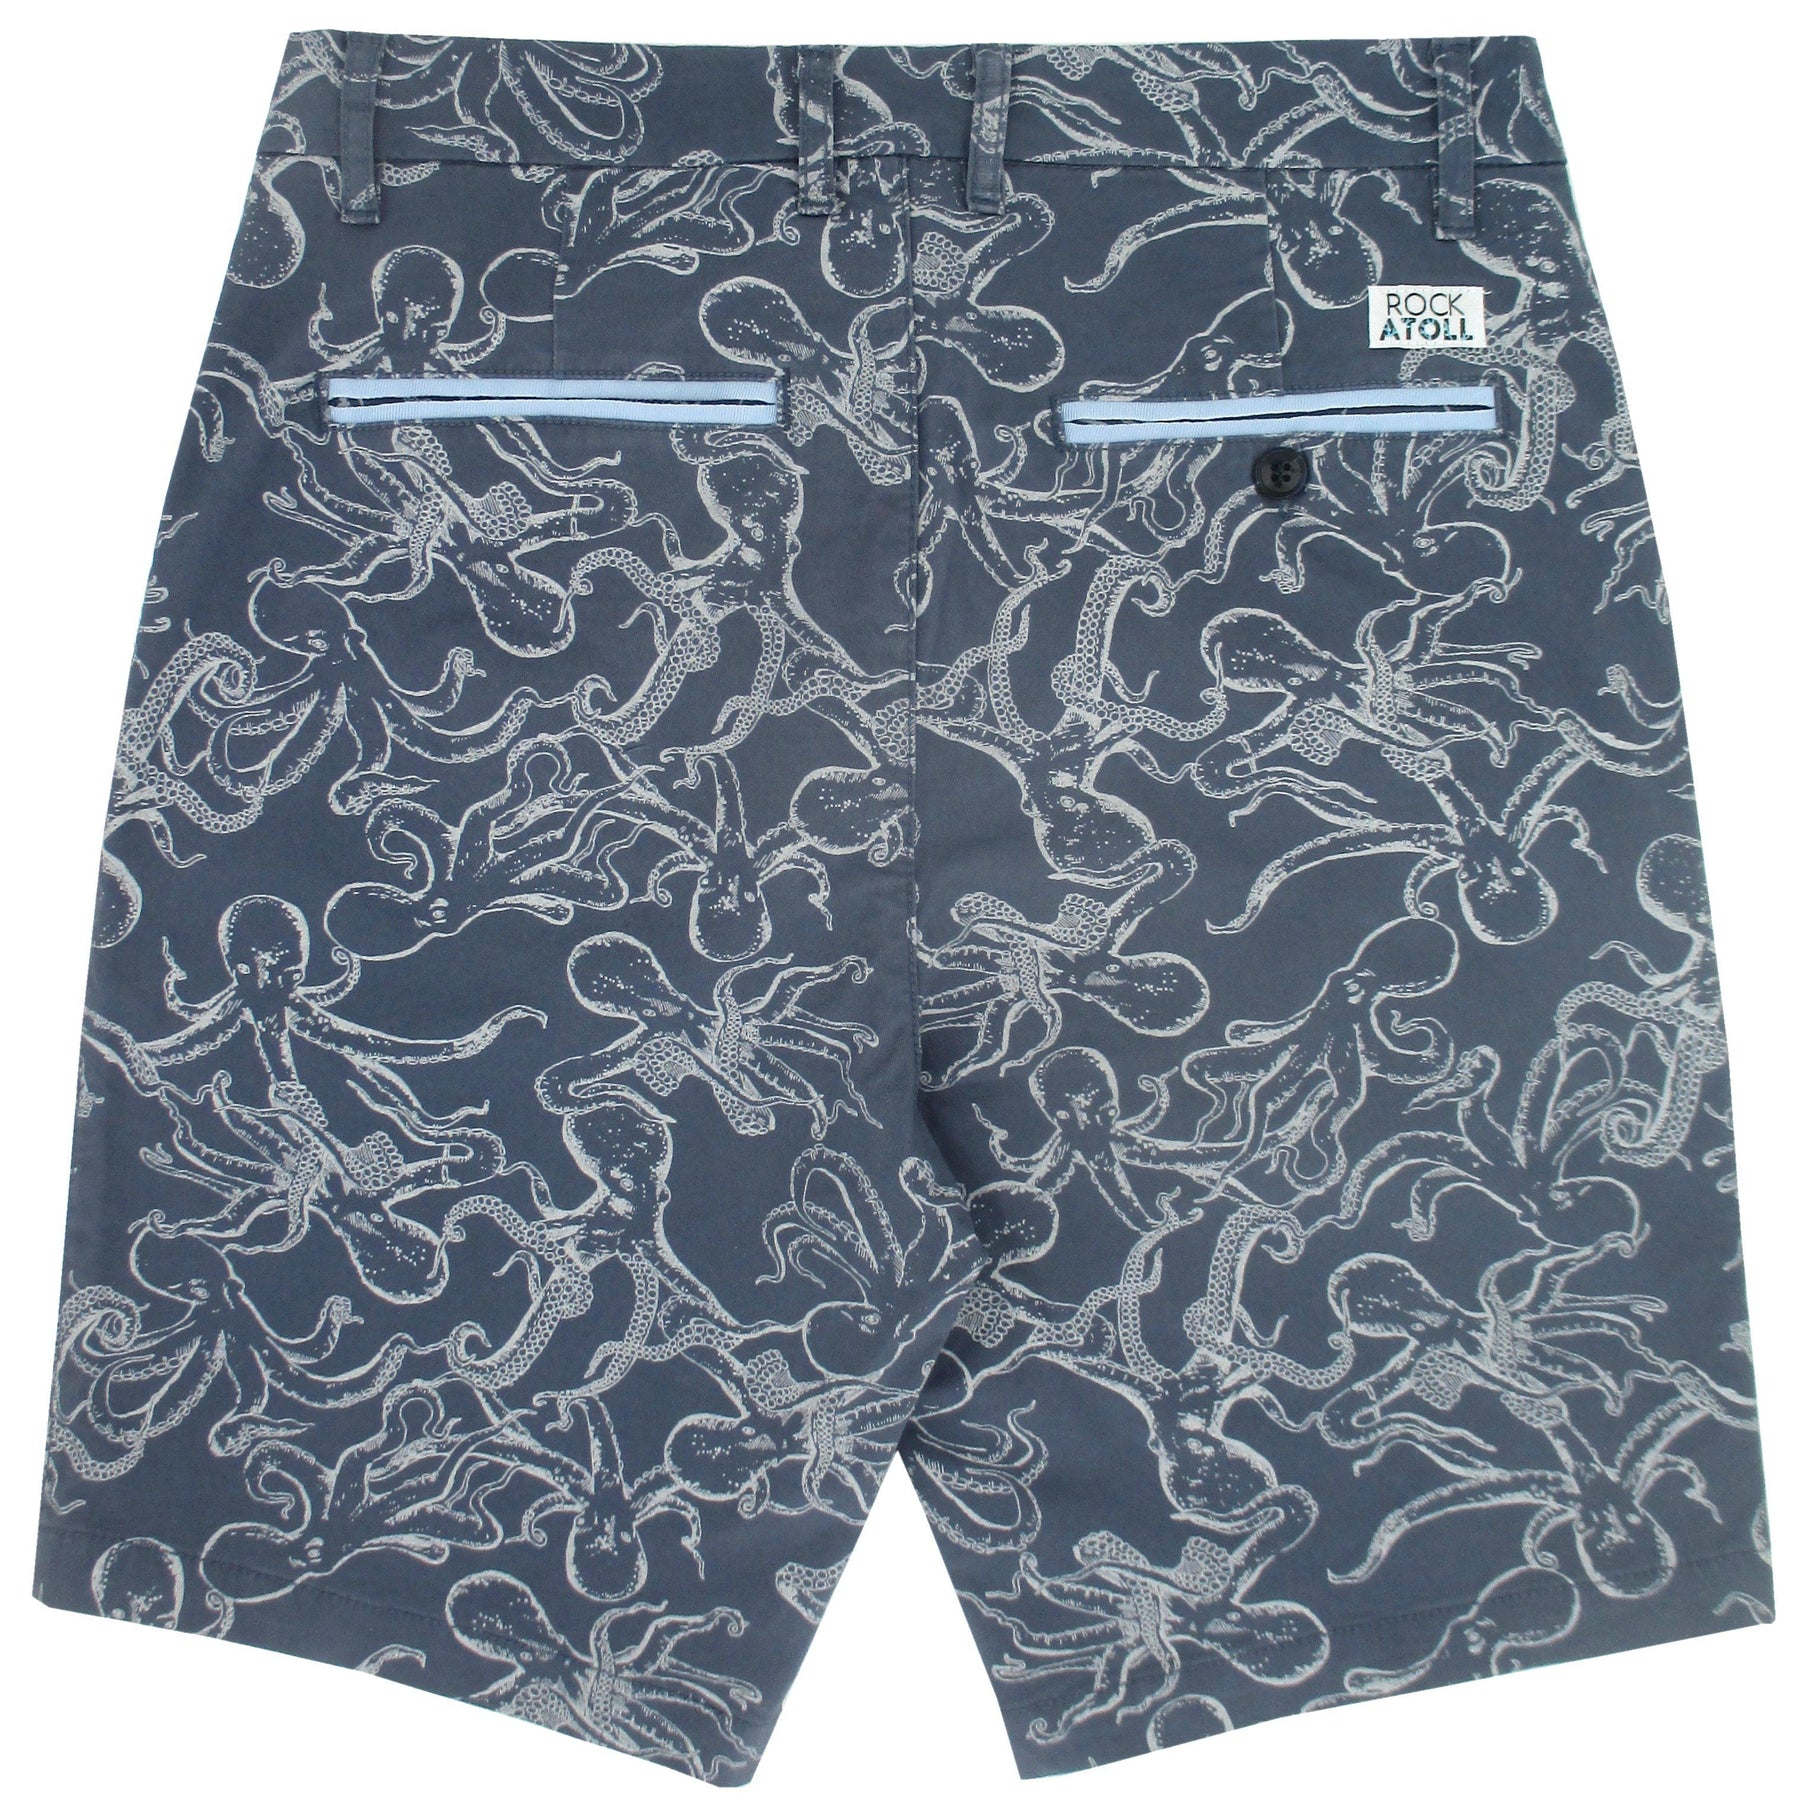 Octopus Shorts For Men. Buy Mens Black Octopus Shorts Online – Rock Atoll